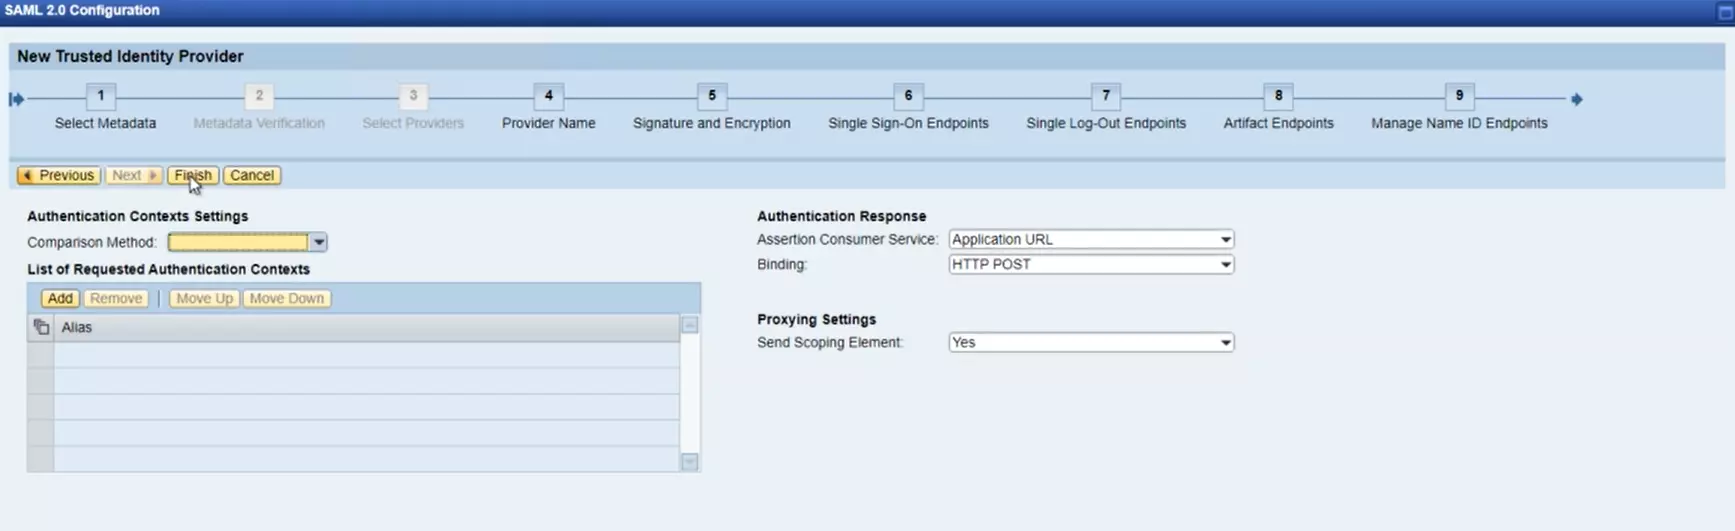 SAP NetWeaver Single Sign On SSO